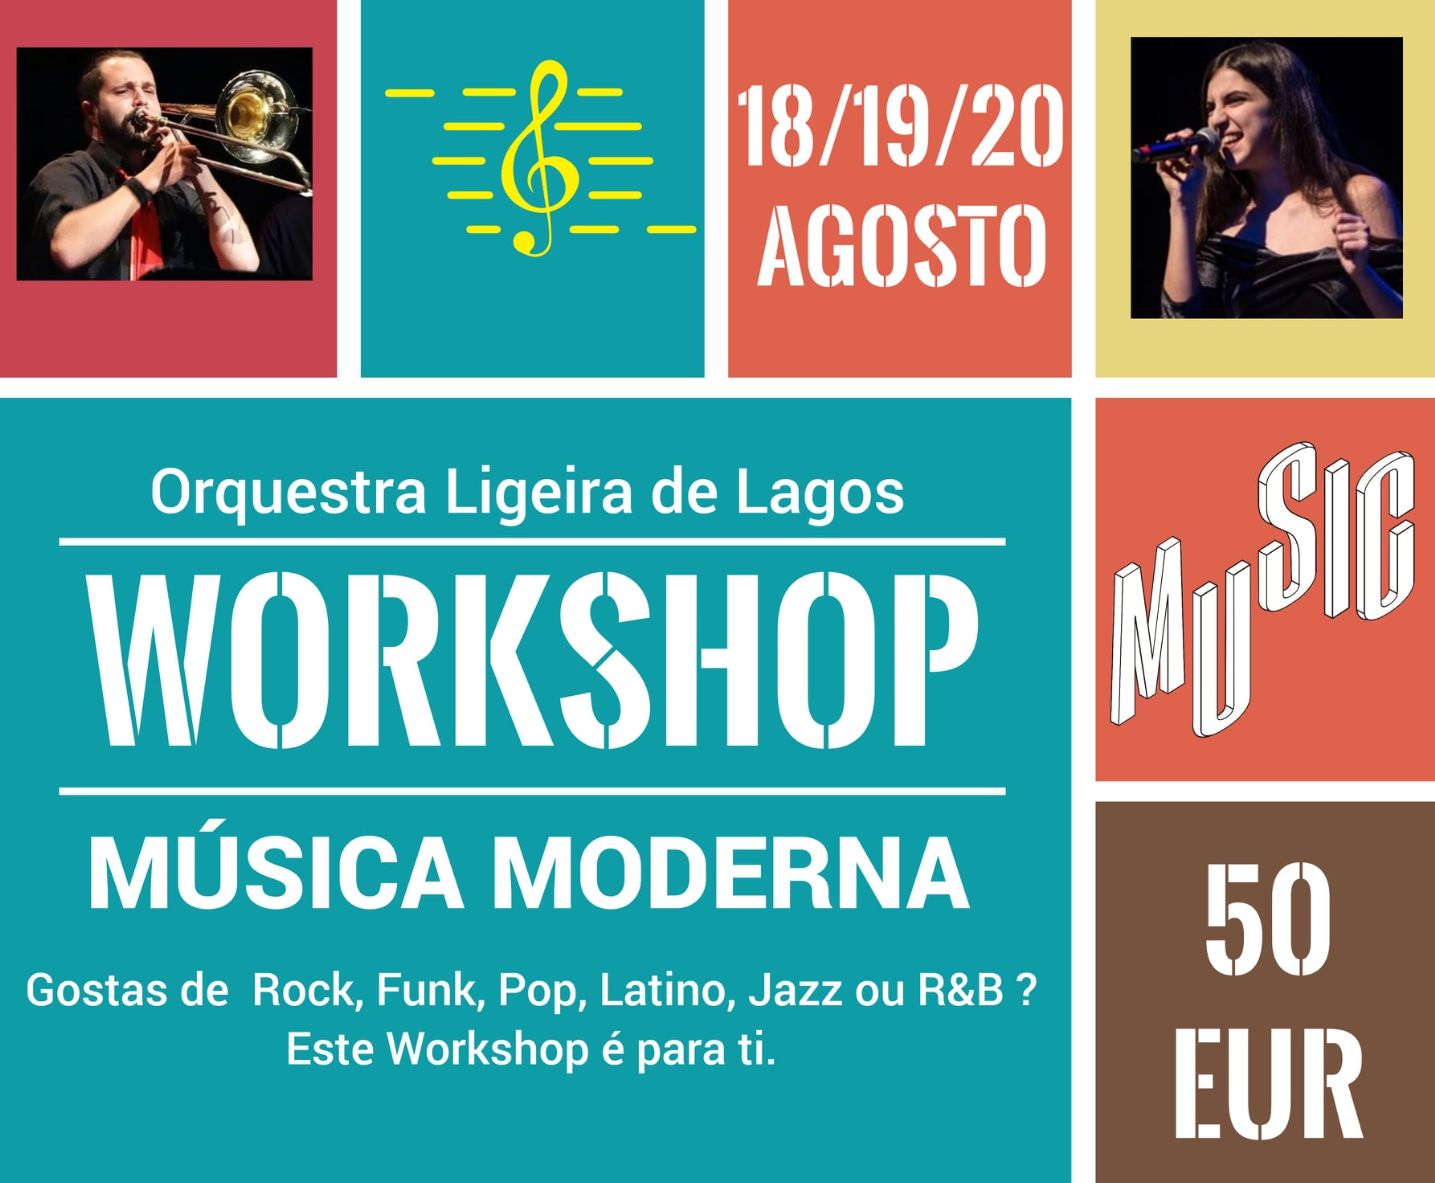 Orquestra Ligeira de Lagos promove workshop de Música Moderna